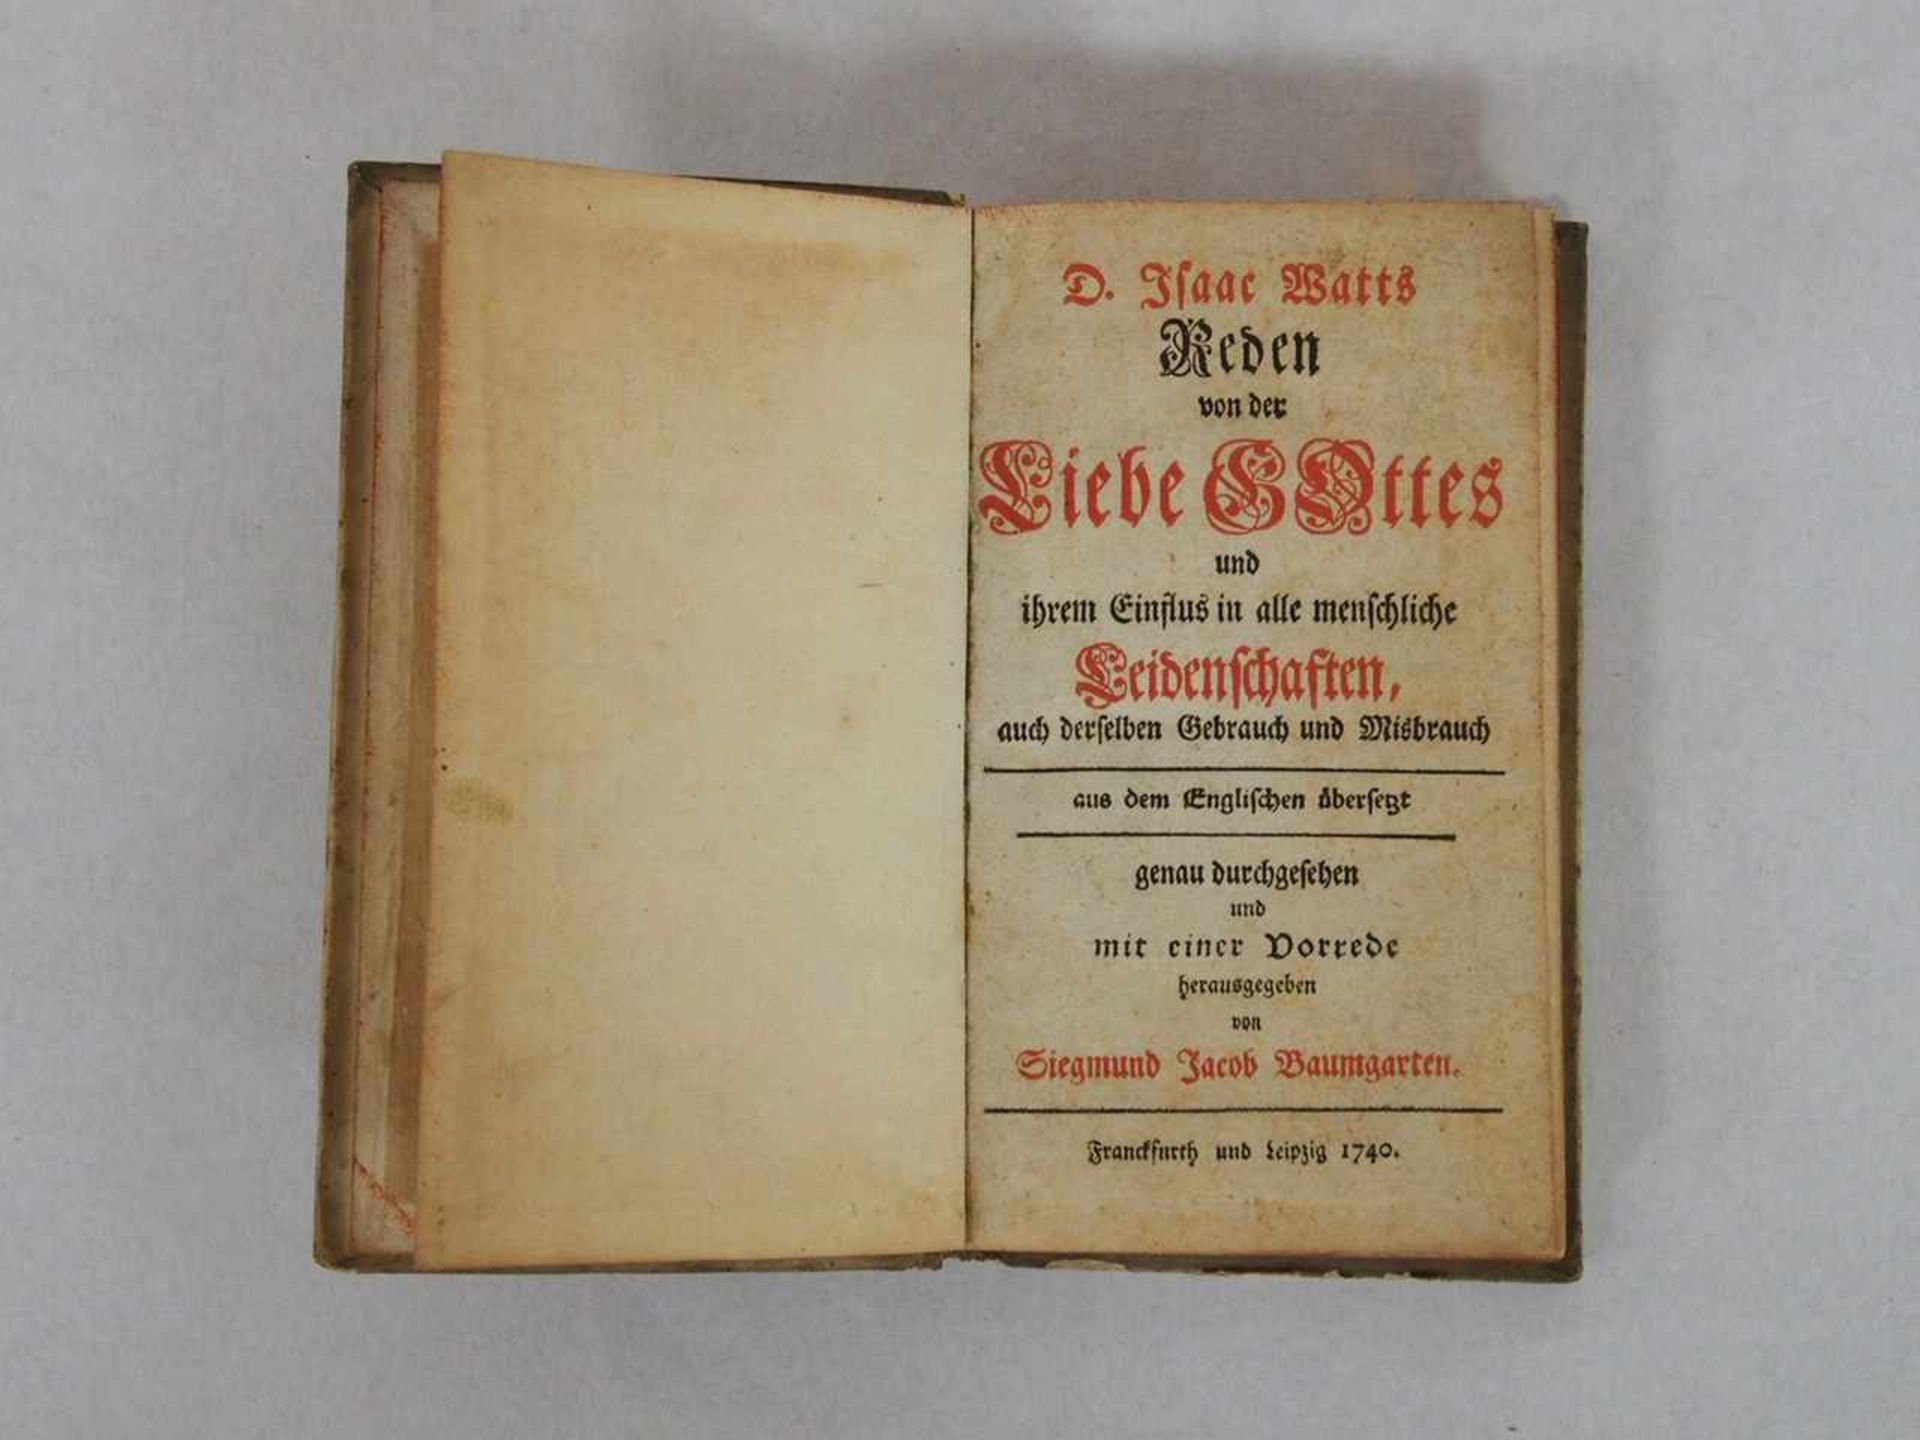 BAUMGARTEN, Siegmund JacobD. Isaac Watts Reden von der Liebe Gottes....Frankfurt / Leipzig 1740 (